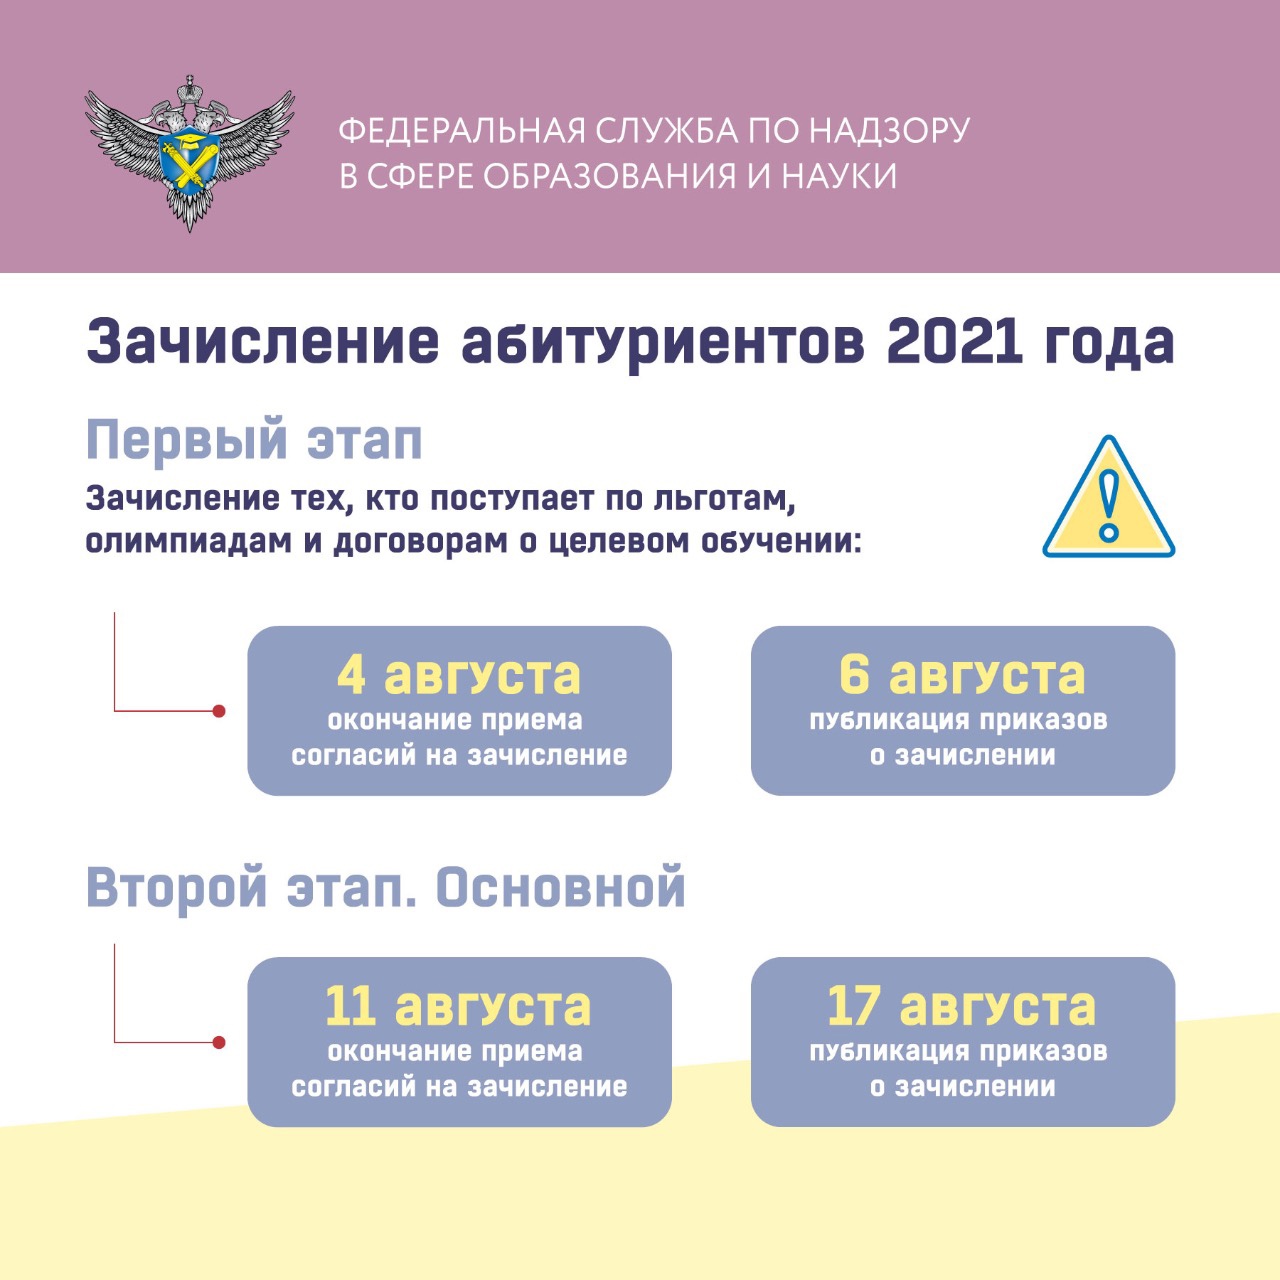 Дата завершения приемной кампании во всех вузах России назначена на 29 июля